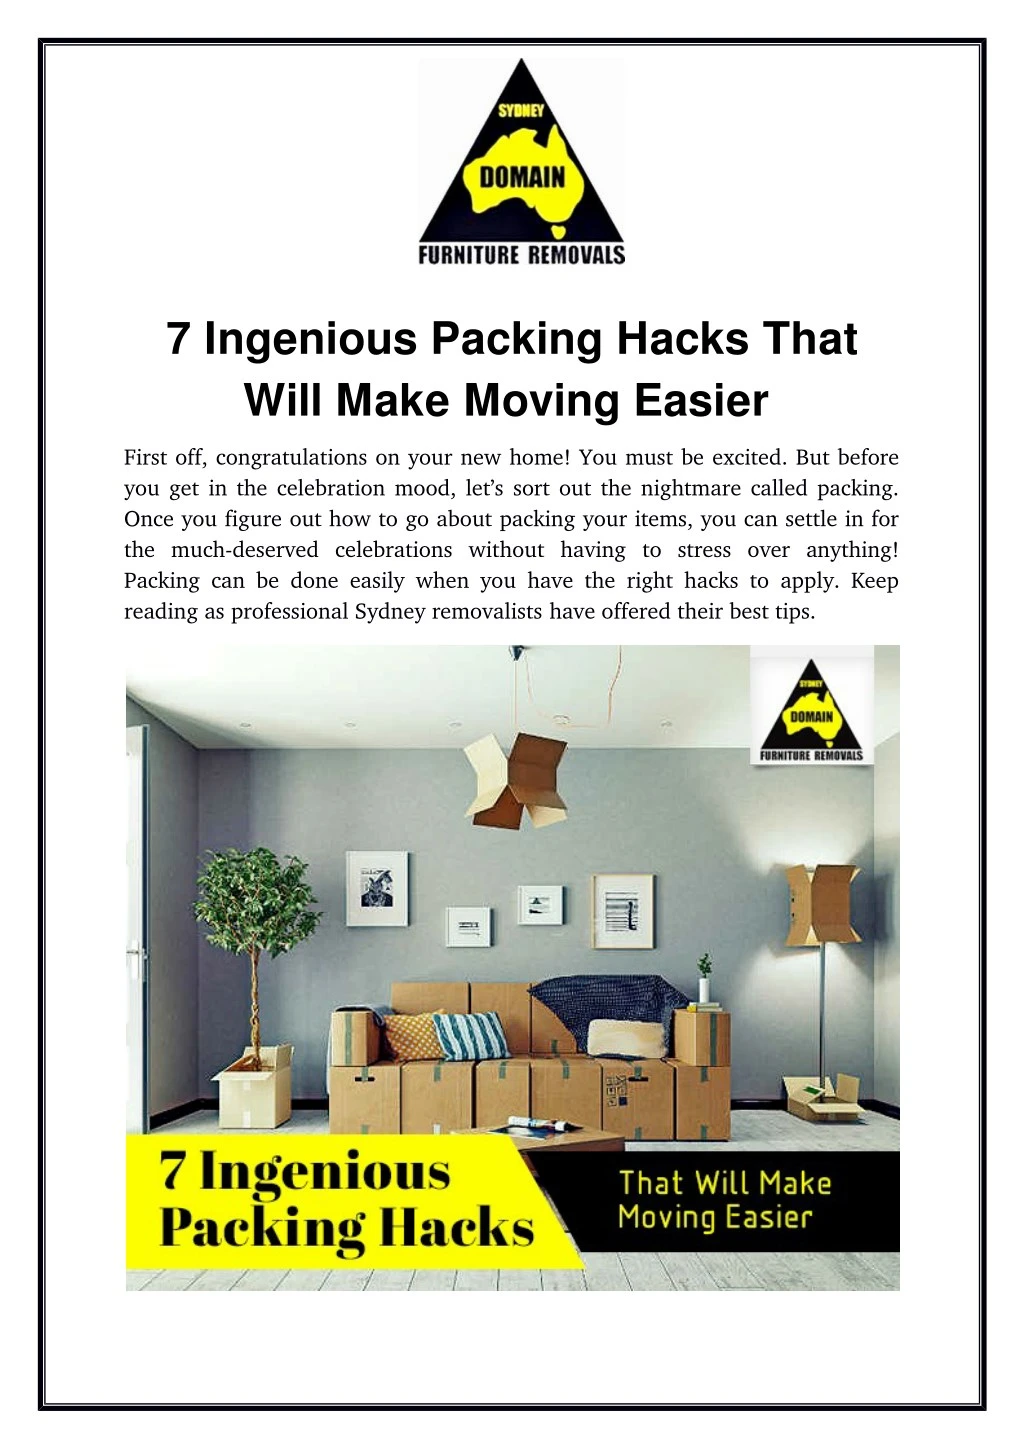 7 ingenious packing hacks that will make moving